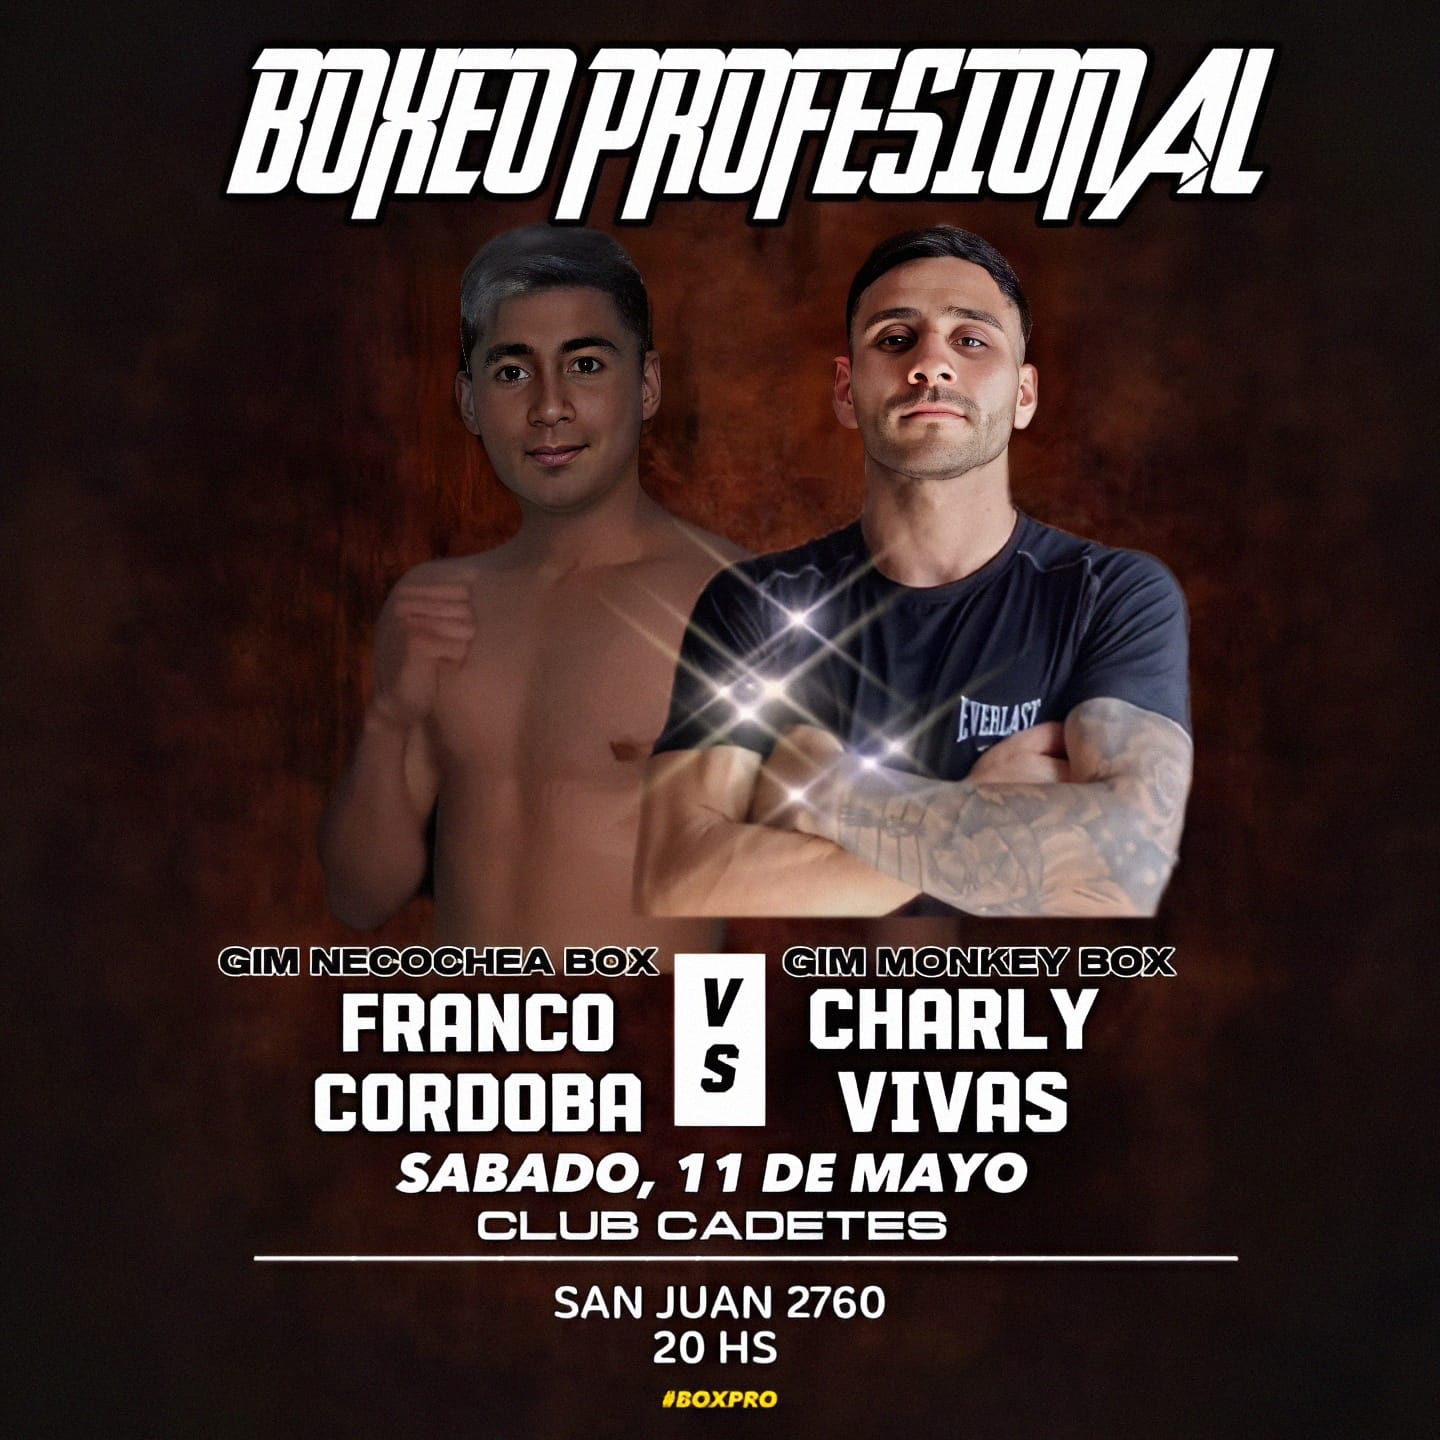 Franco Córdoba y Charly Vivas pelearán este sábado en Cadetes.